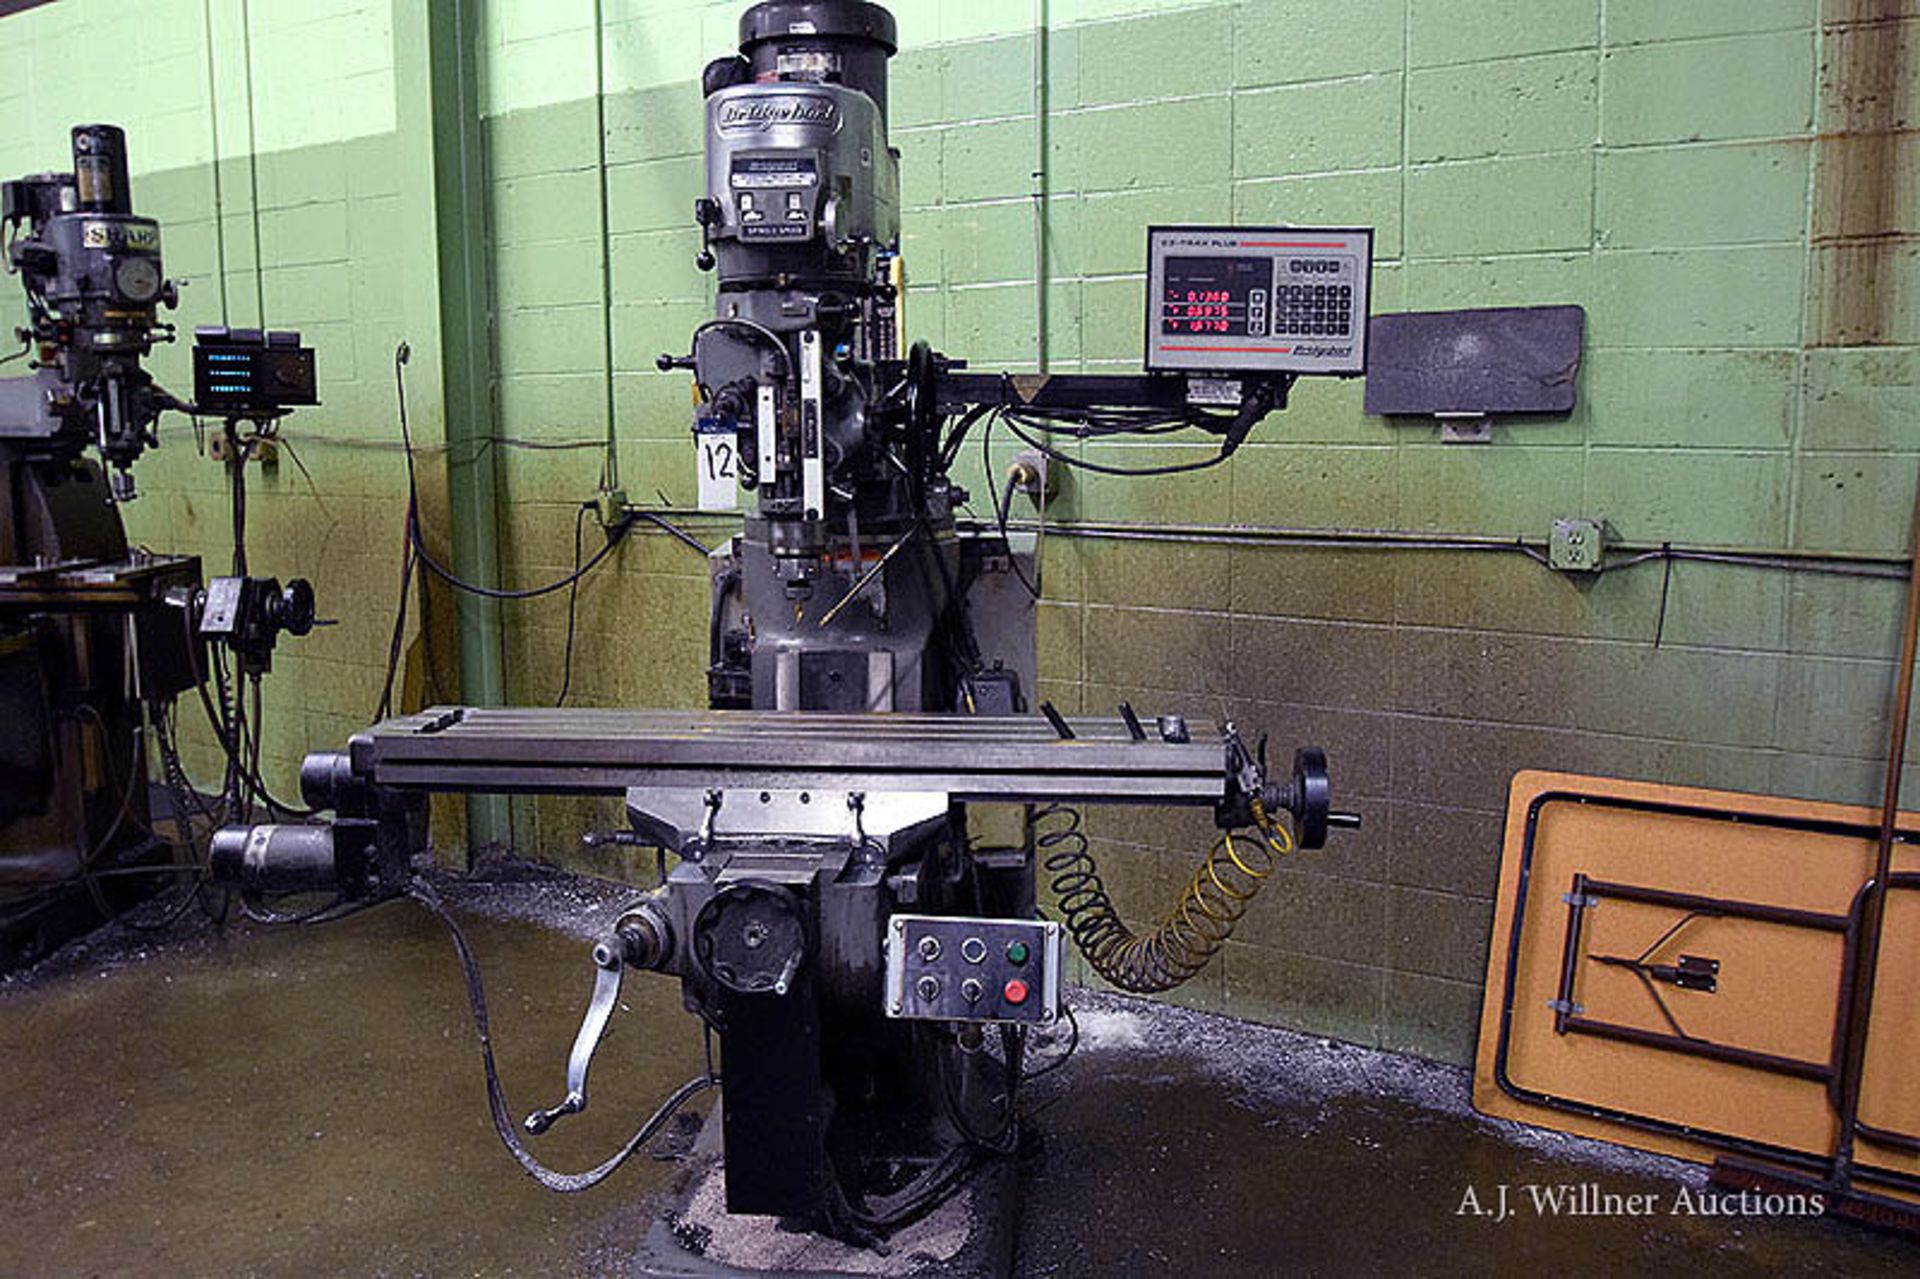 Bridgeport vertical milling machine